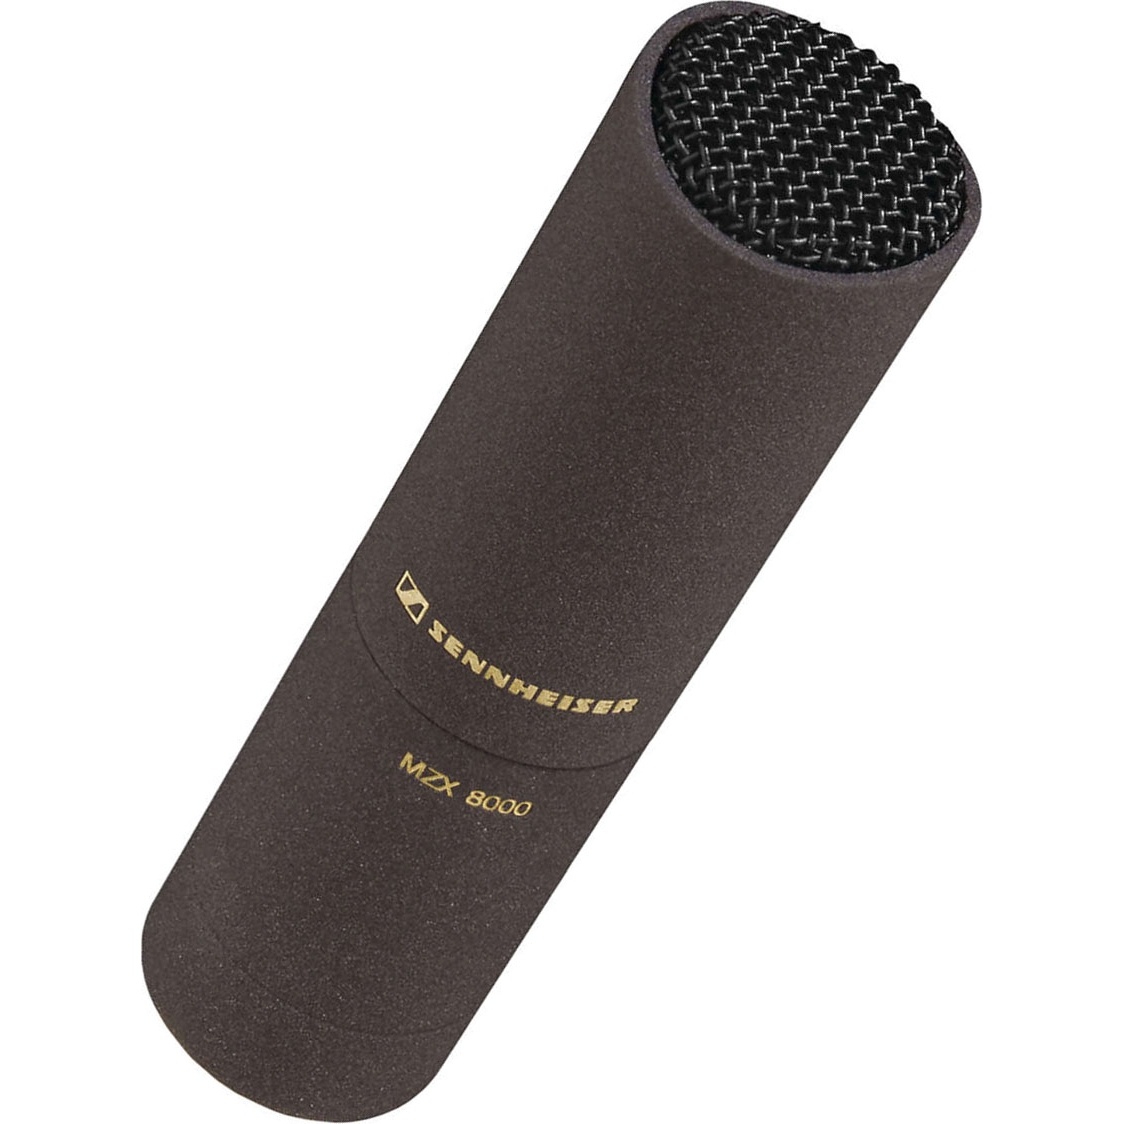 Sennheiser MKH8020 Condenser Omni Microphone